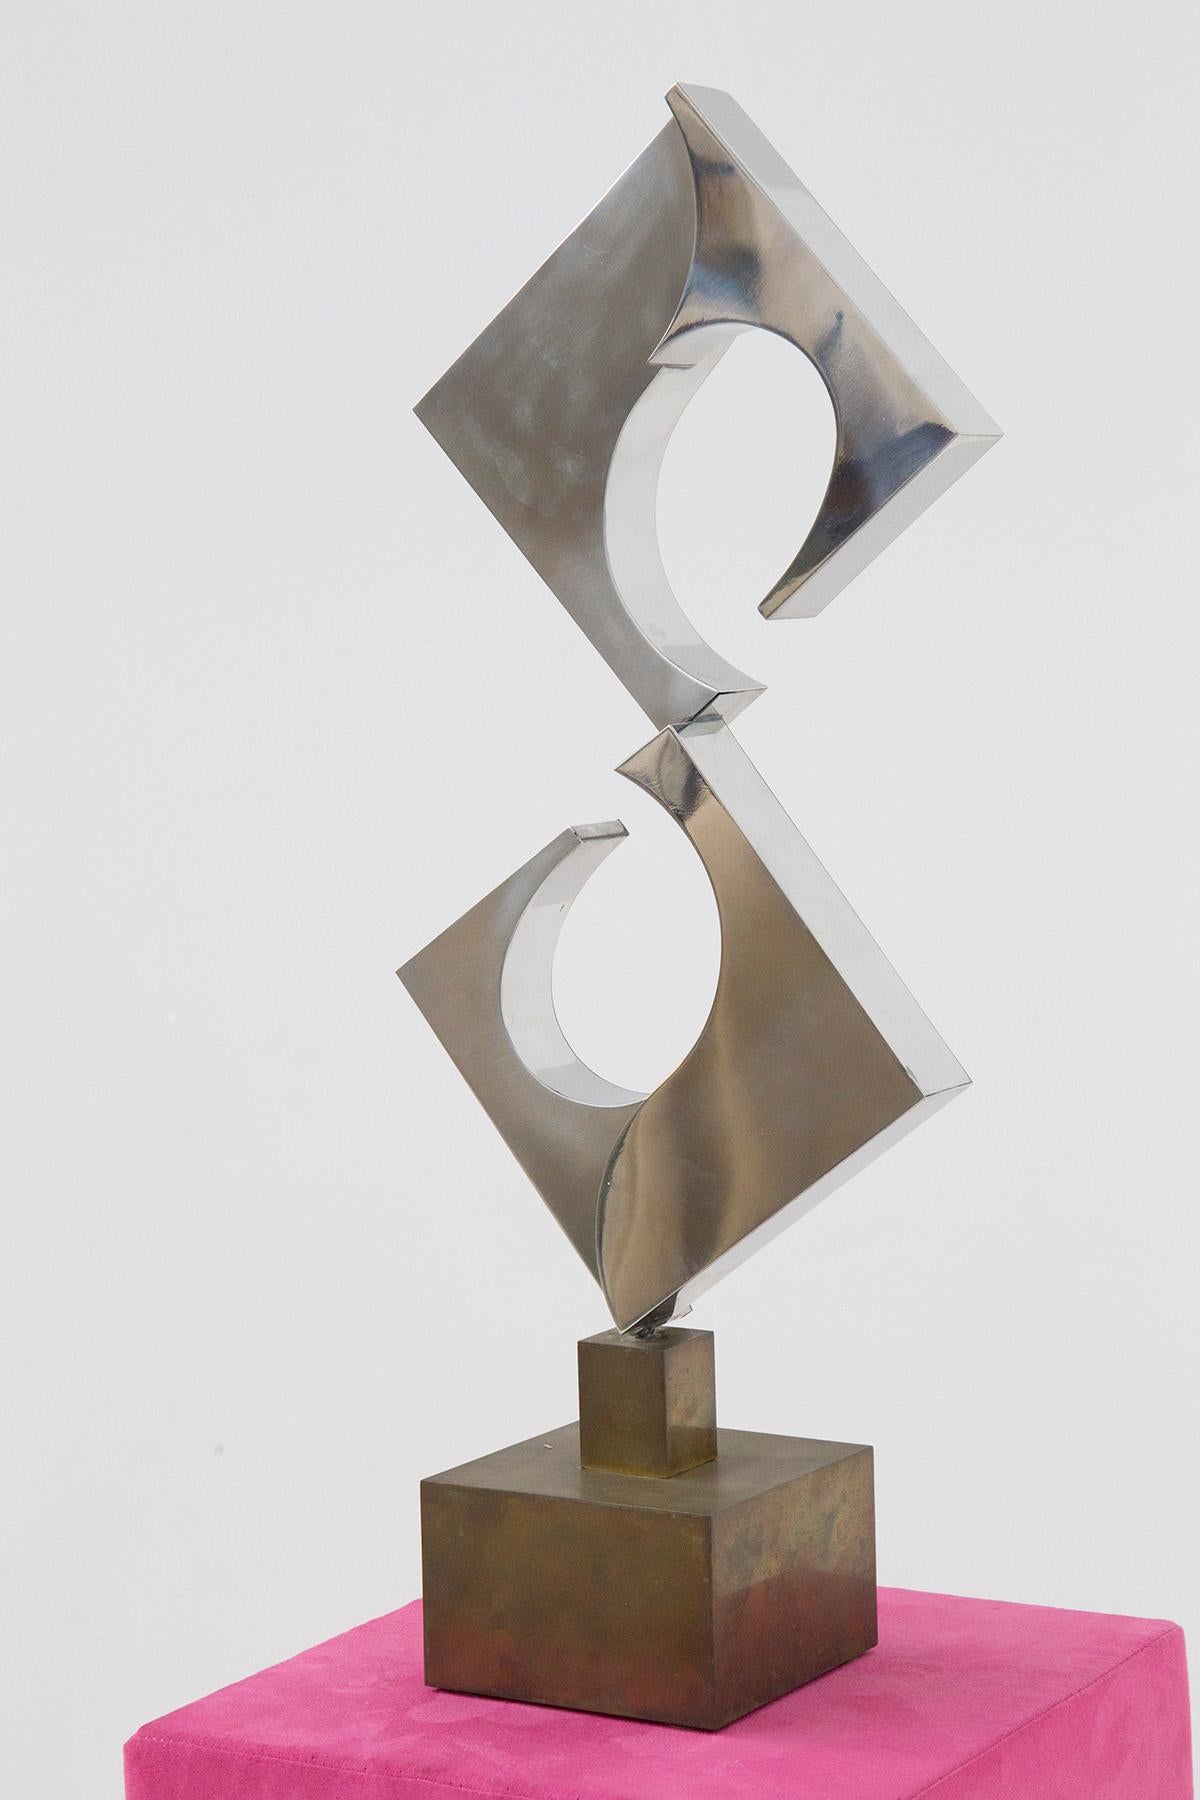 Futuristische Skulptur des Bildhauermeisters Cappello Carmelo mit dem Titel Dreieckige Spirale. Auflage 5 von 6 von 1978, Signatur und Jahr unter der Skulptur eingraviert. Das Werk ist eine futuristische Darstellung der architektonischen Skulptur.